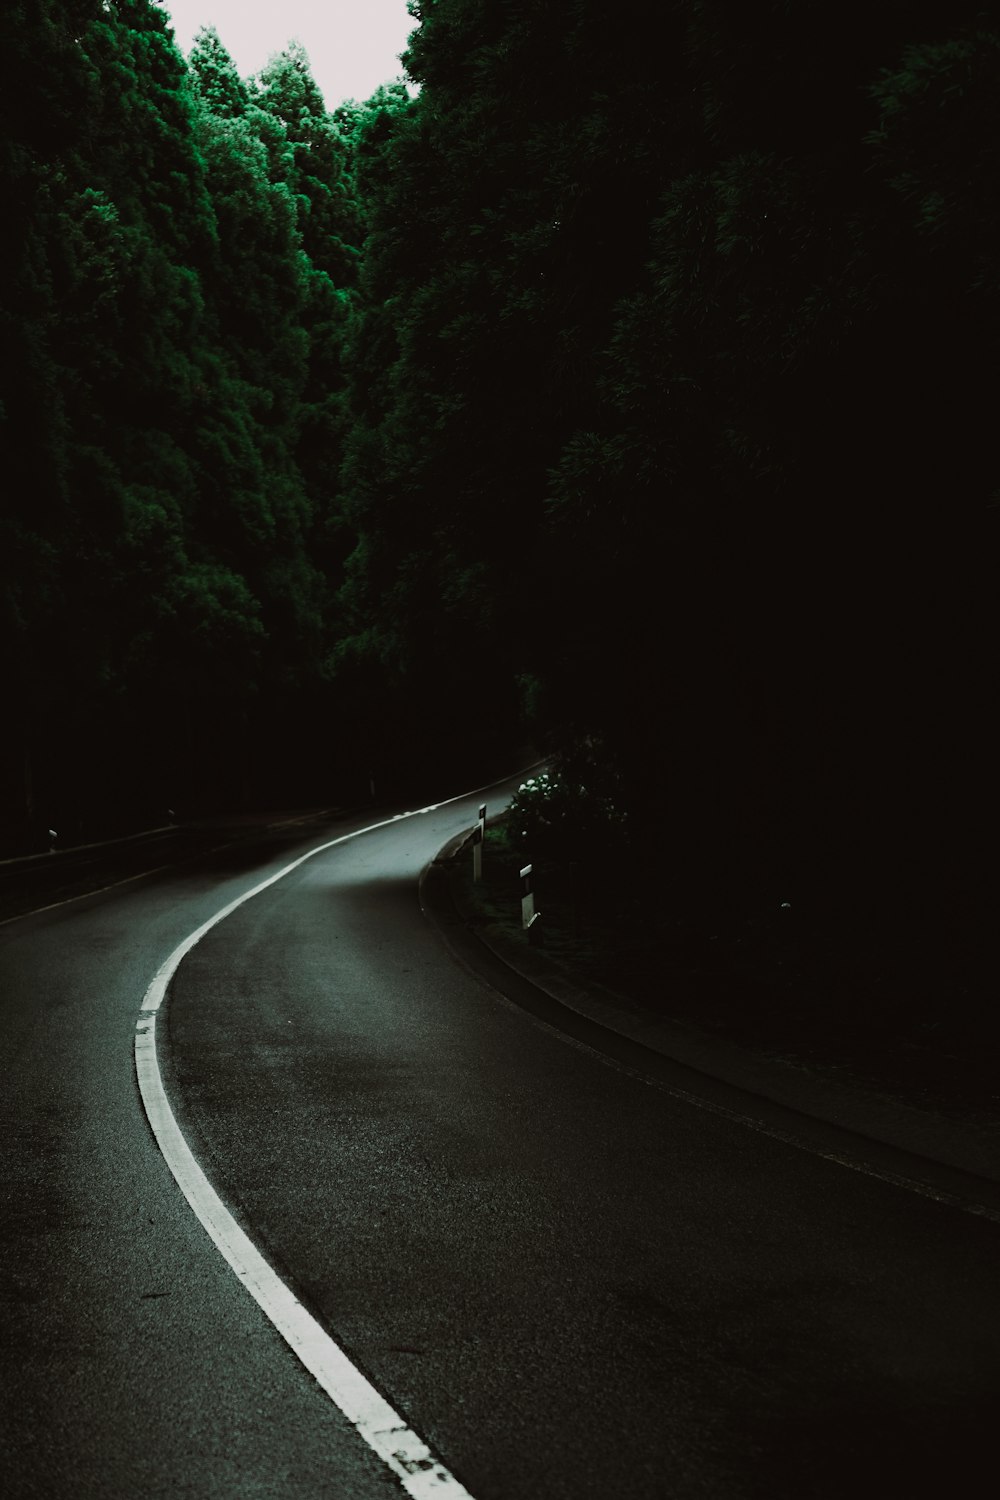 Carretera de asfalto negro entre árboles